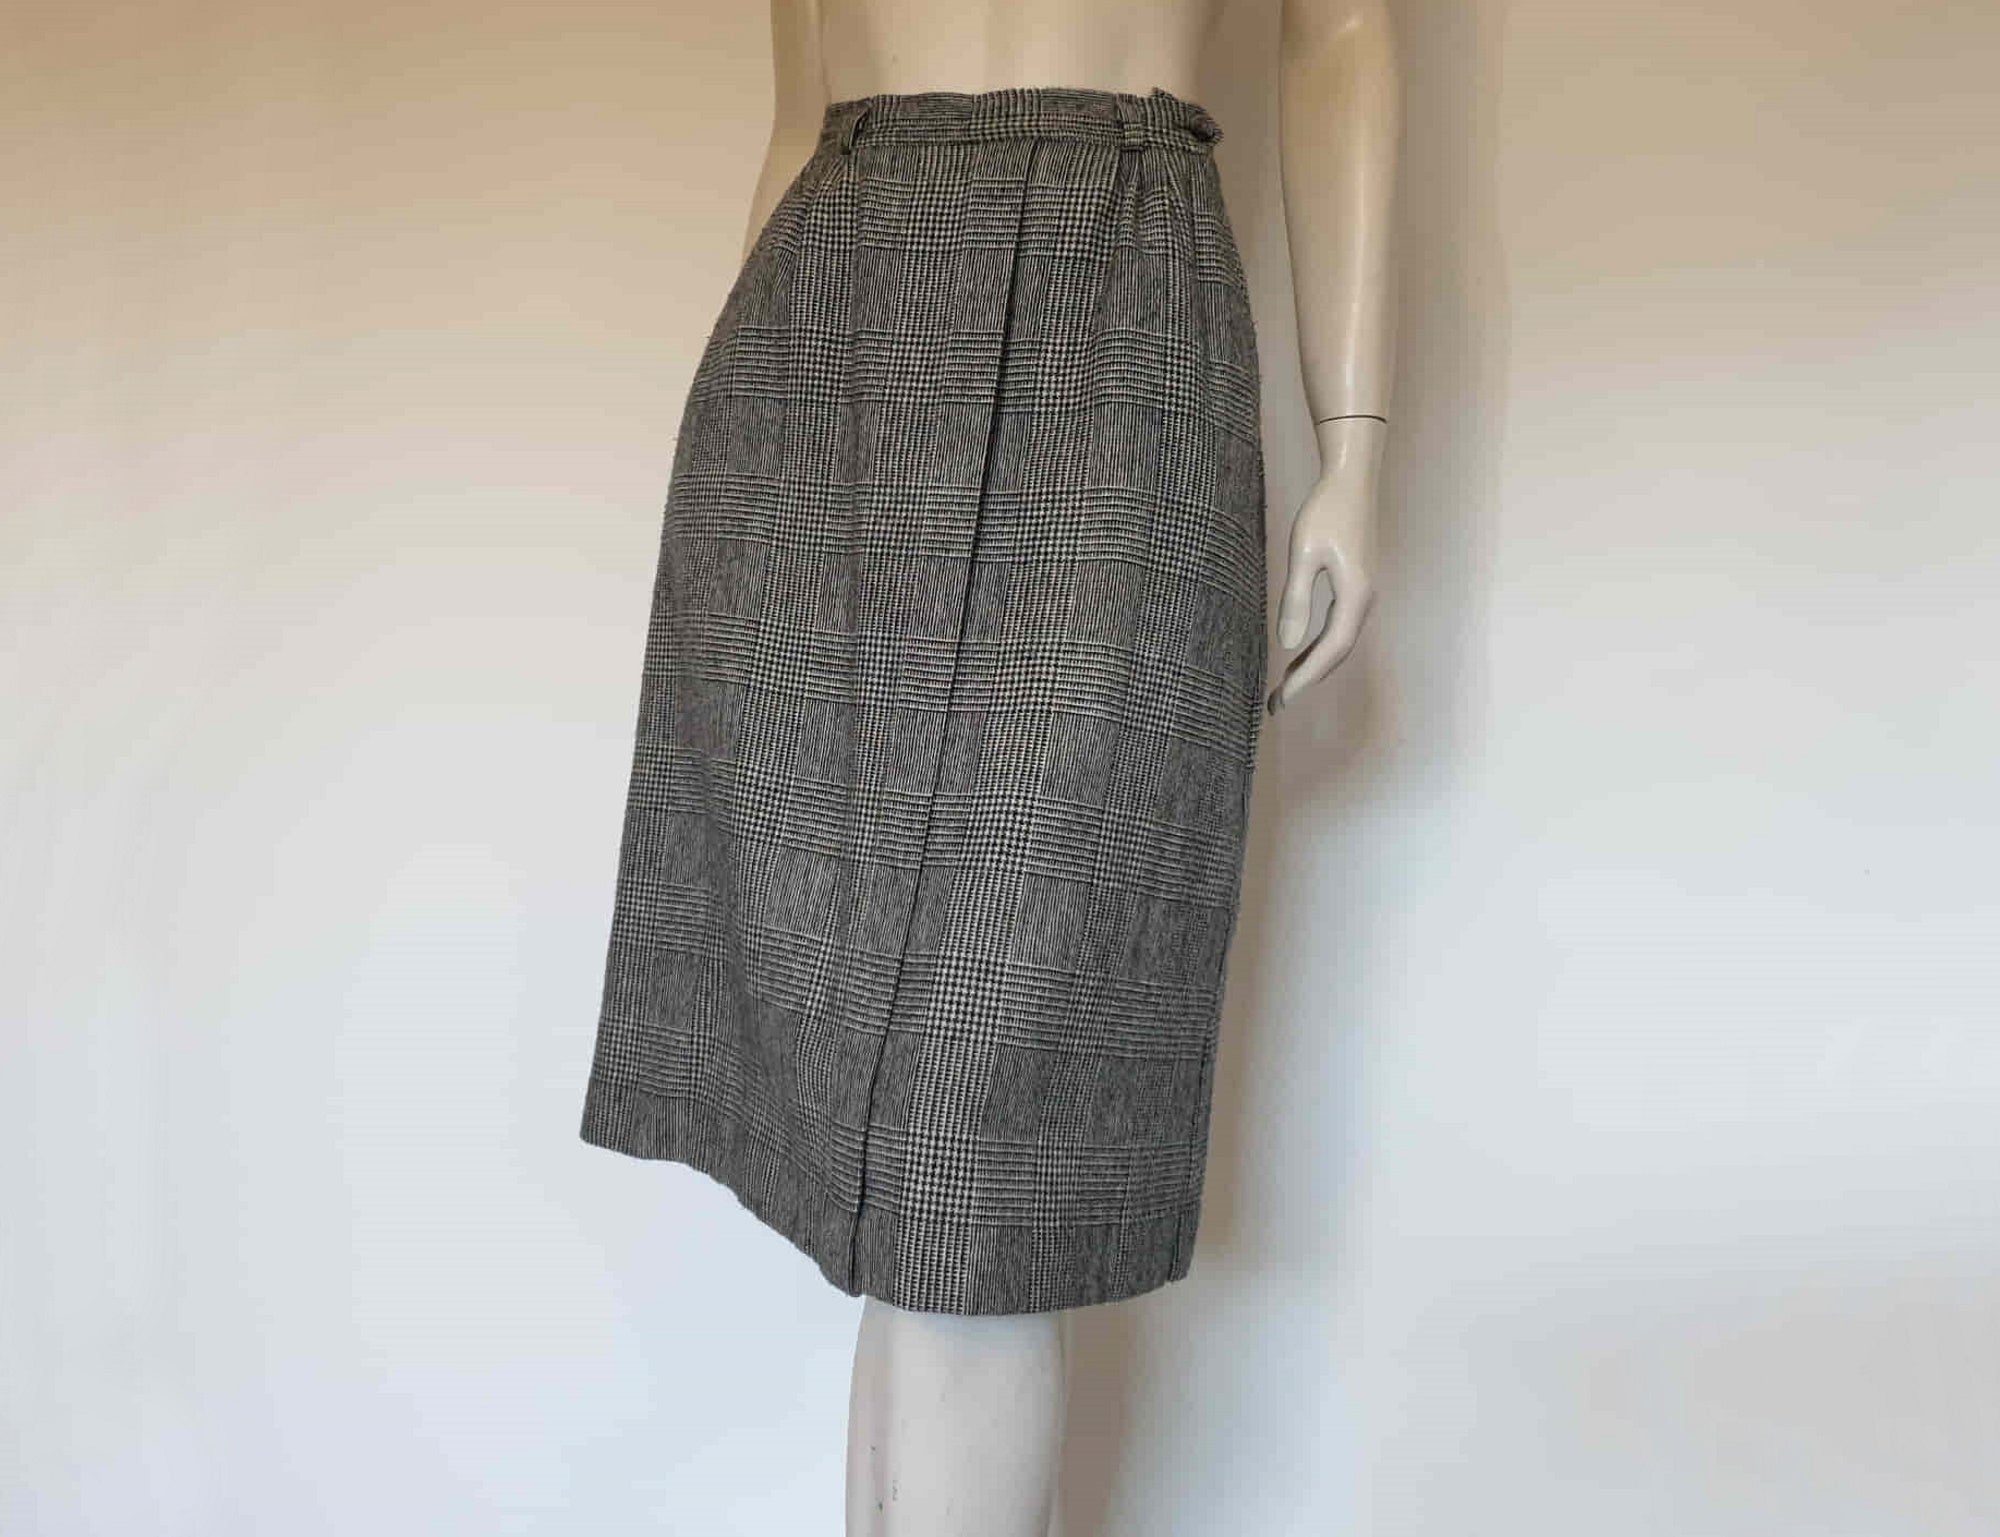 1980s Black & White Checked Skirt - M